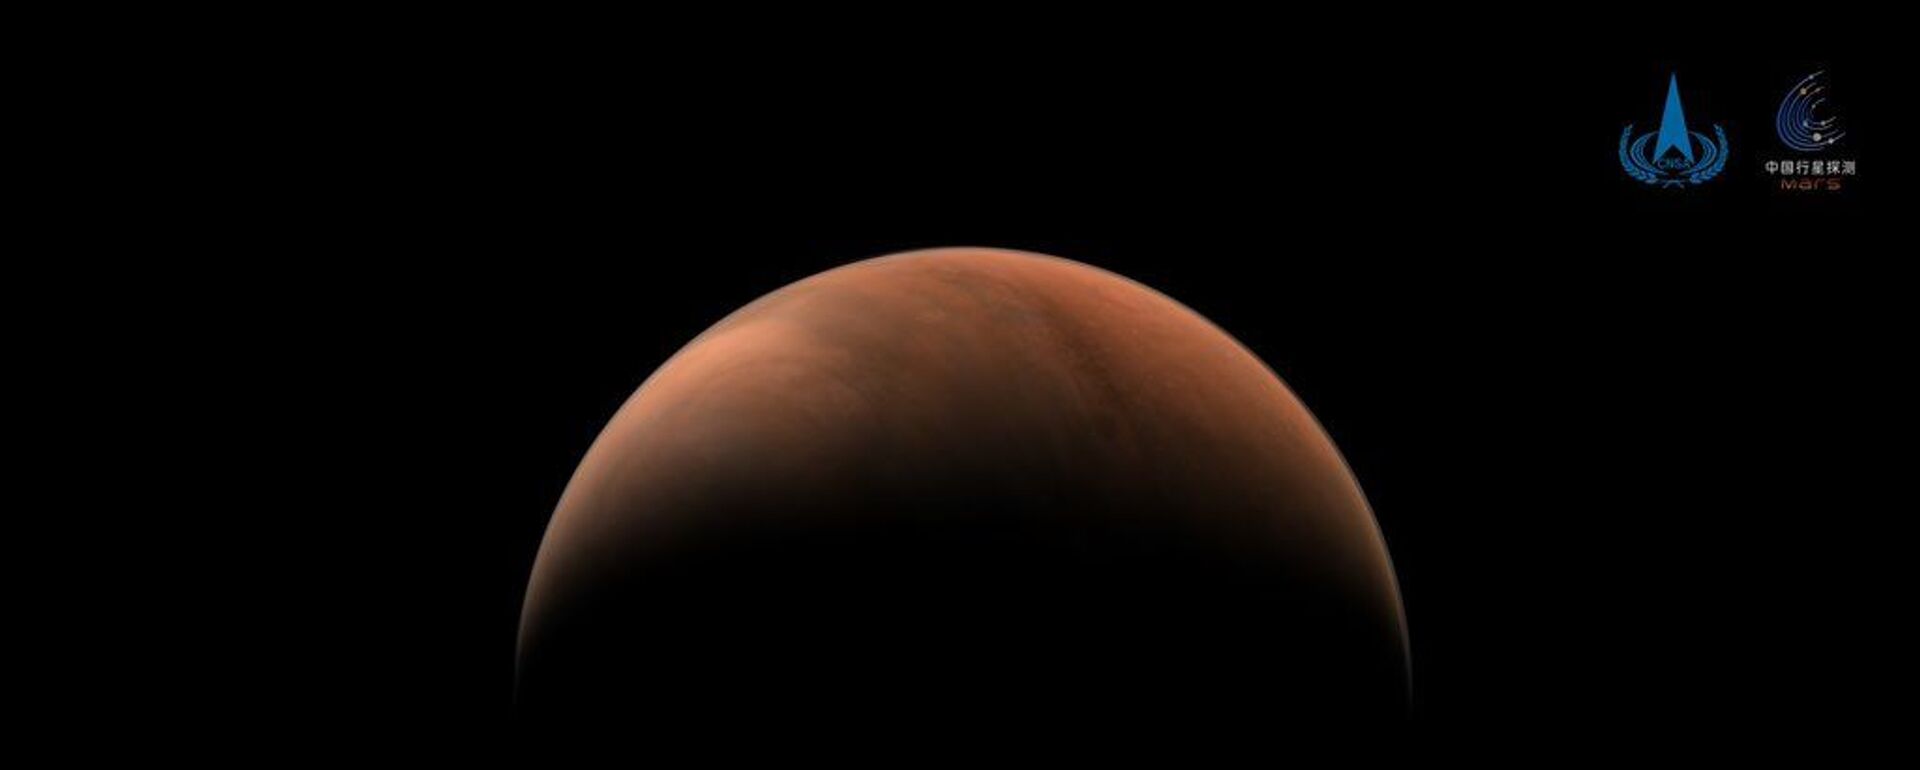 Çin'in Mars keşif aracı Tianwen-1, gezegenin iki tarafından fotoğraf gönderdi - Sputnik Türkiye, 1920, 11.10.2021